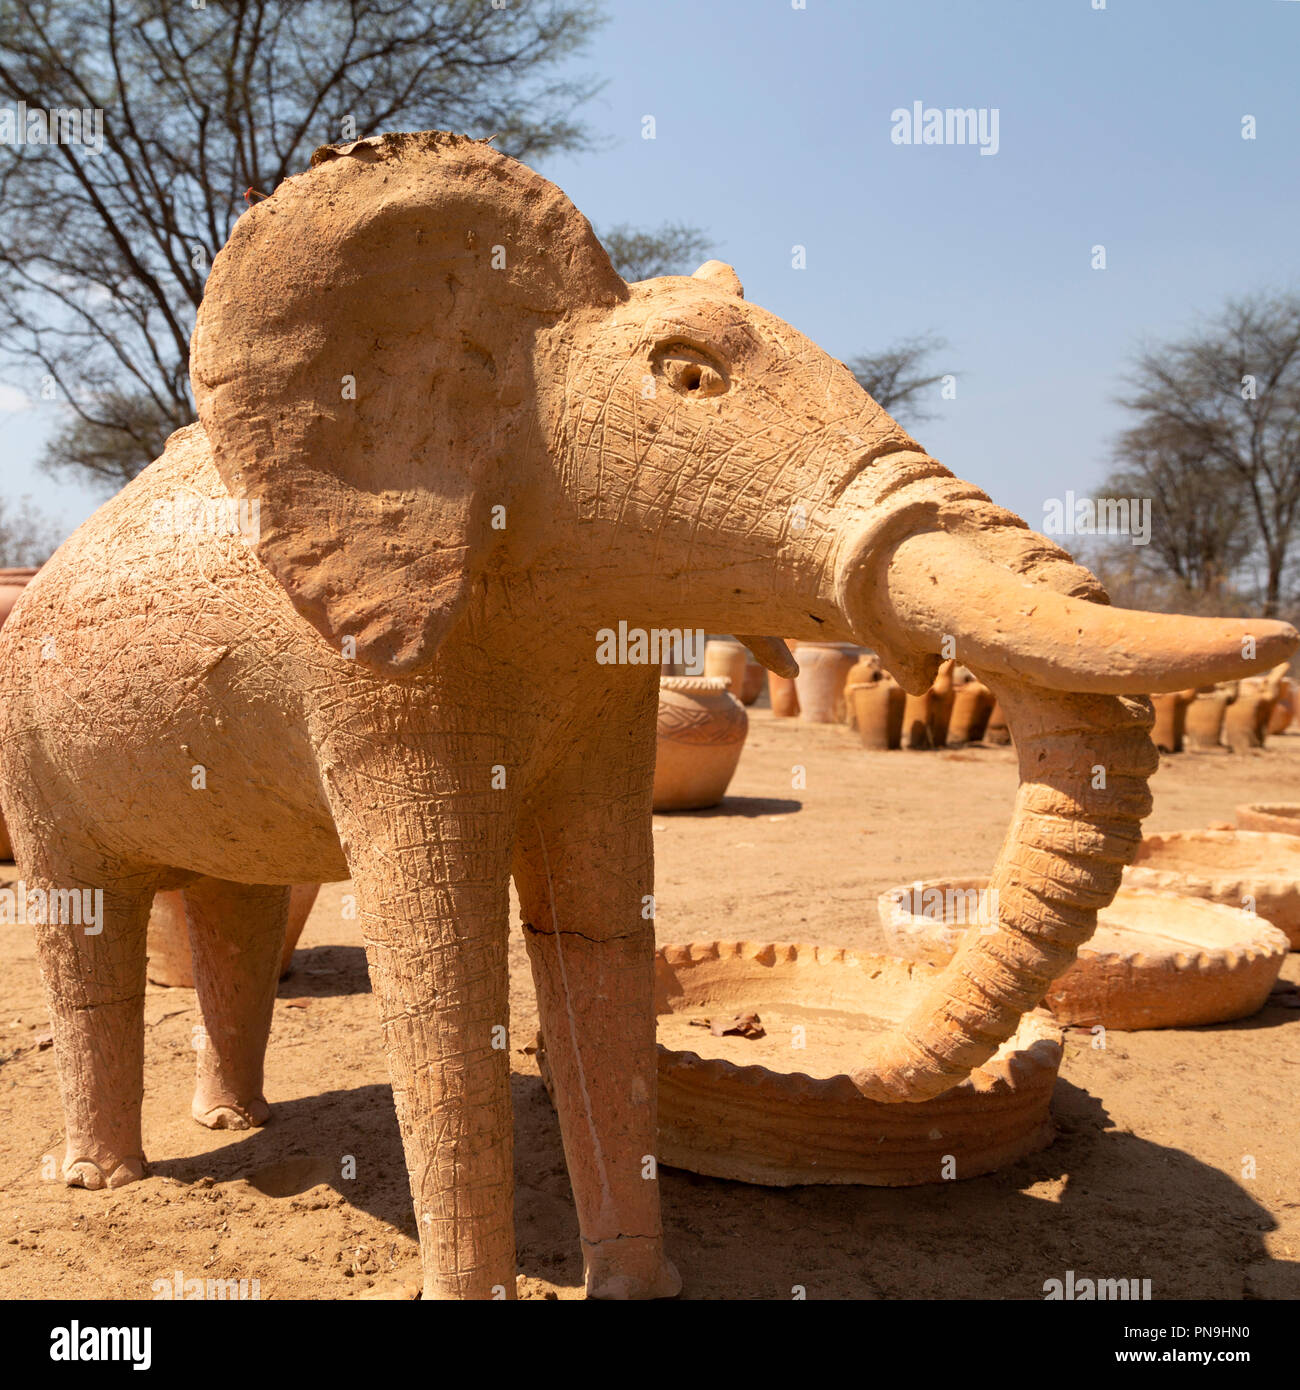 Eine Keramik Elefant auf Anzeige an einem strassenrand in Simbabwe. Die Stücke am Stall sind, vorbei an Reisende verkauft. Stockfoto